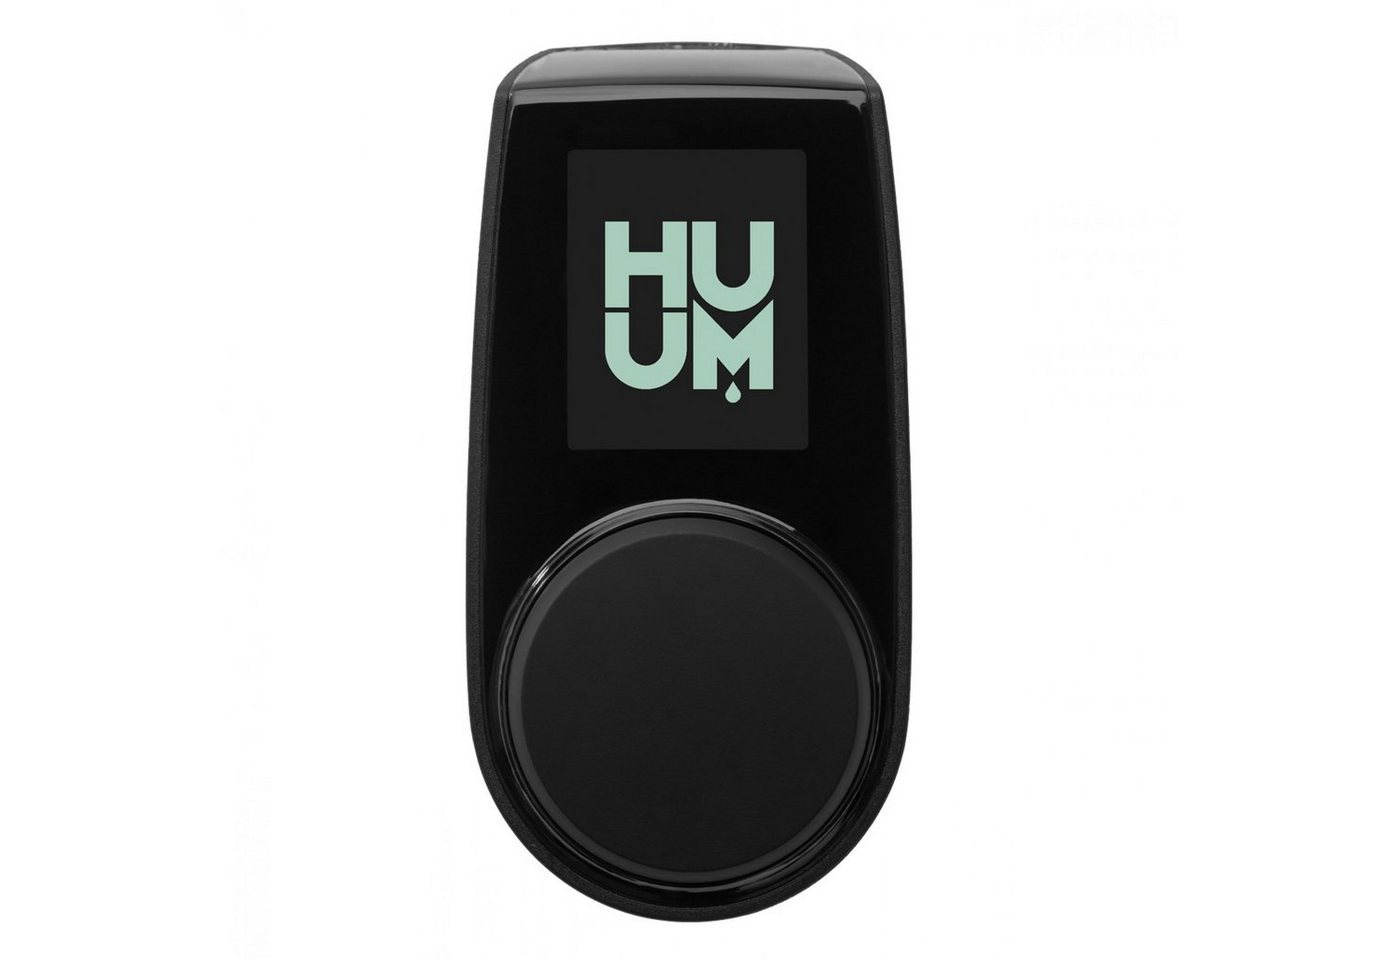 HUUM Sauna-Steuergerät HUUM UKU 4G Black 4.1 Saunasteuerung bis 18 kW mit App-Steuerung von HUUM